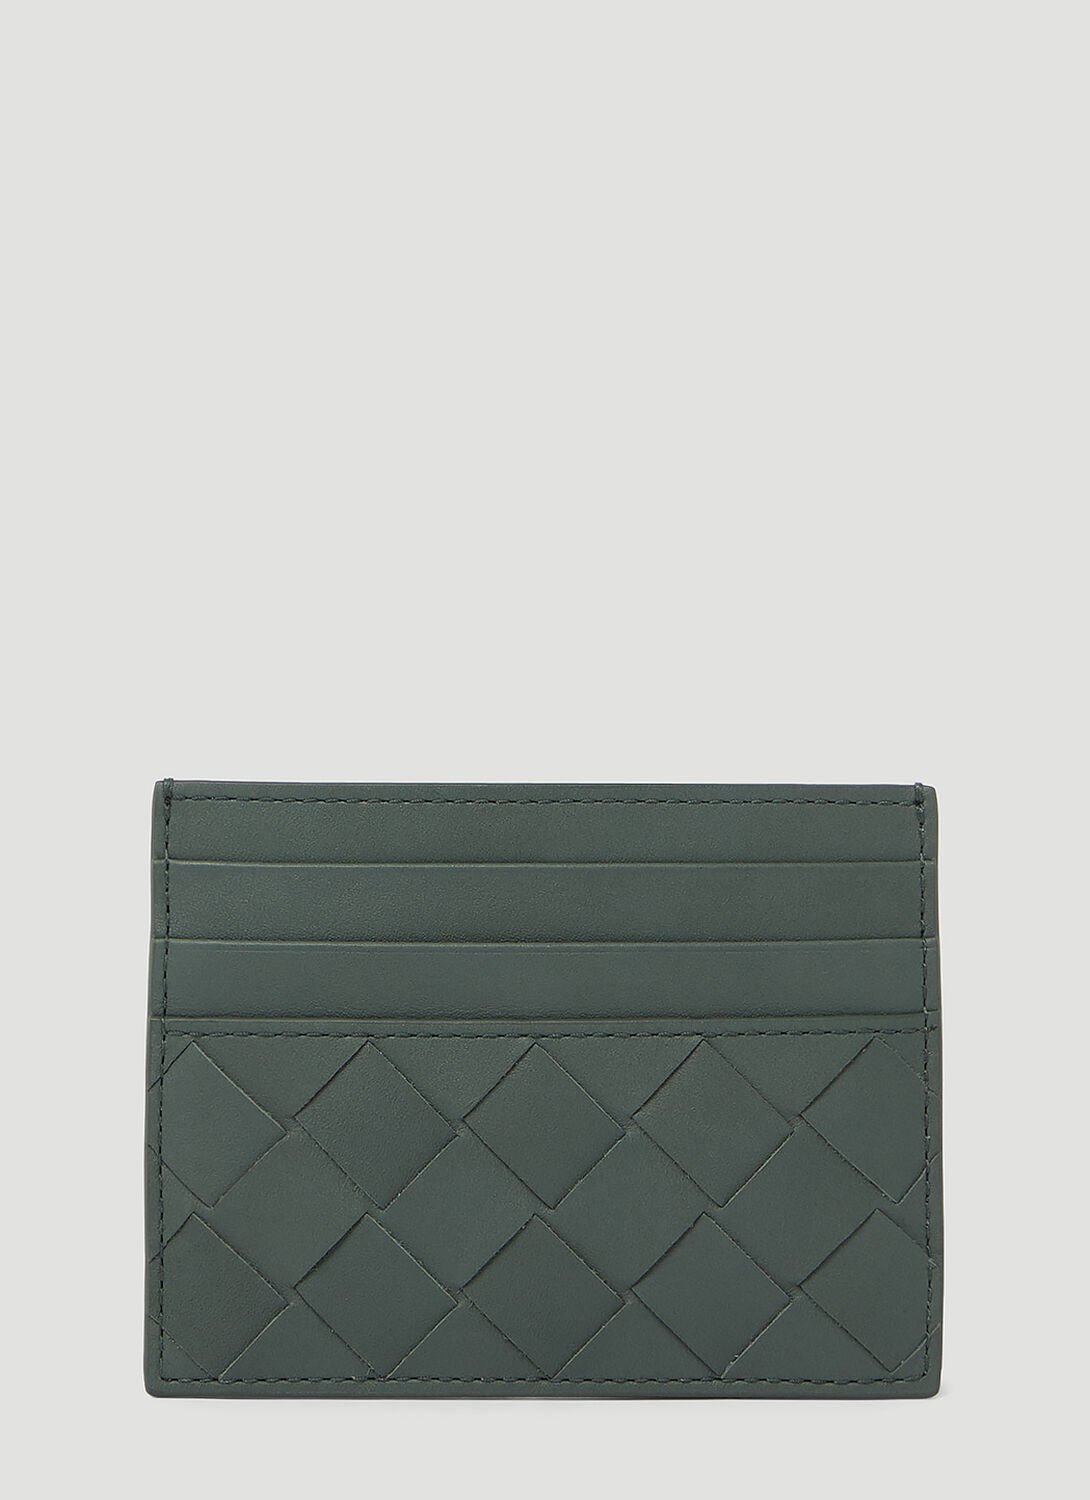 Bottega Veneta Intrecciato Leather Cardholder In Grey